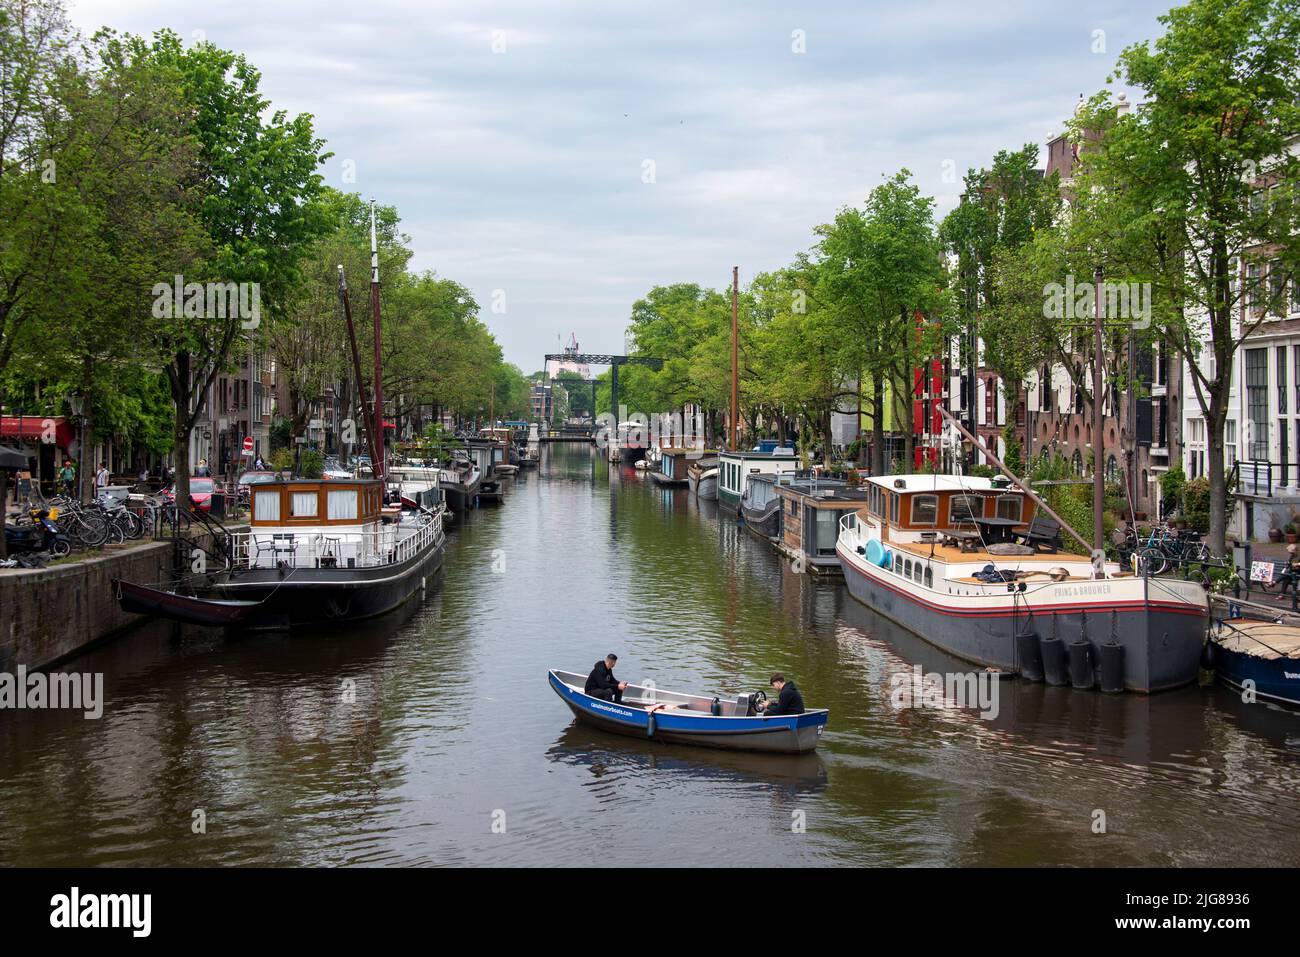 Canal avec bateaux à moteur, Amsterdam, pays-Bas Banque D'Images